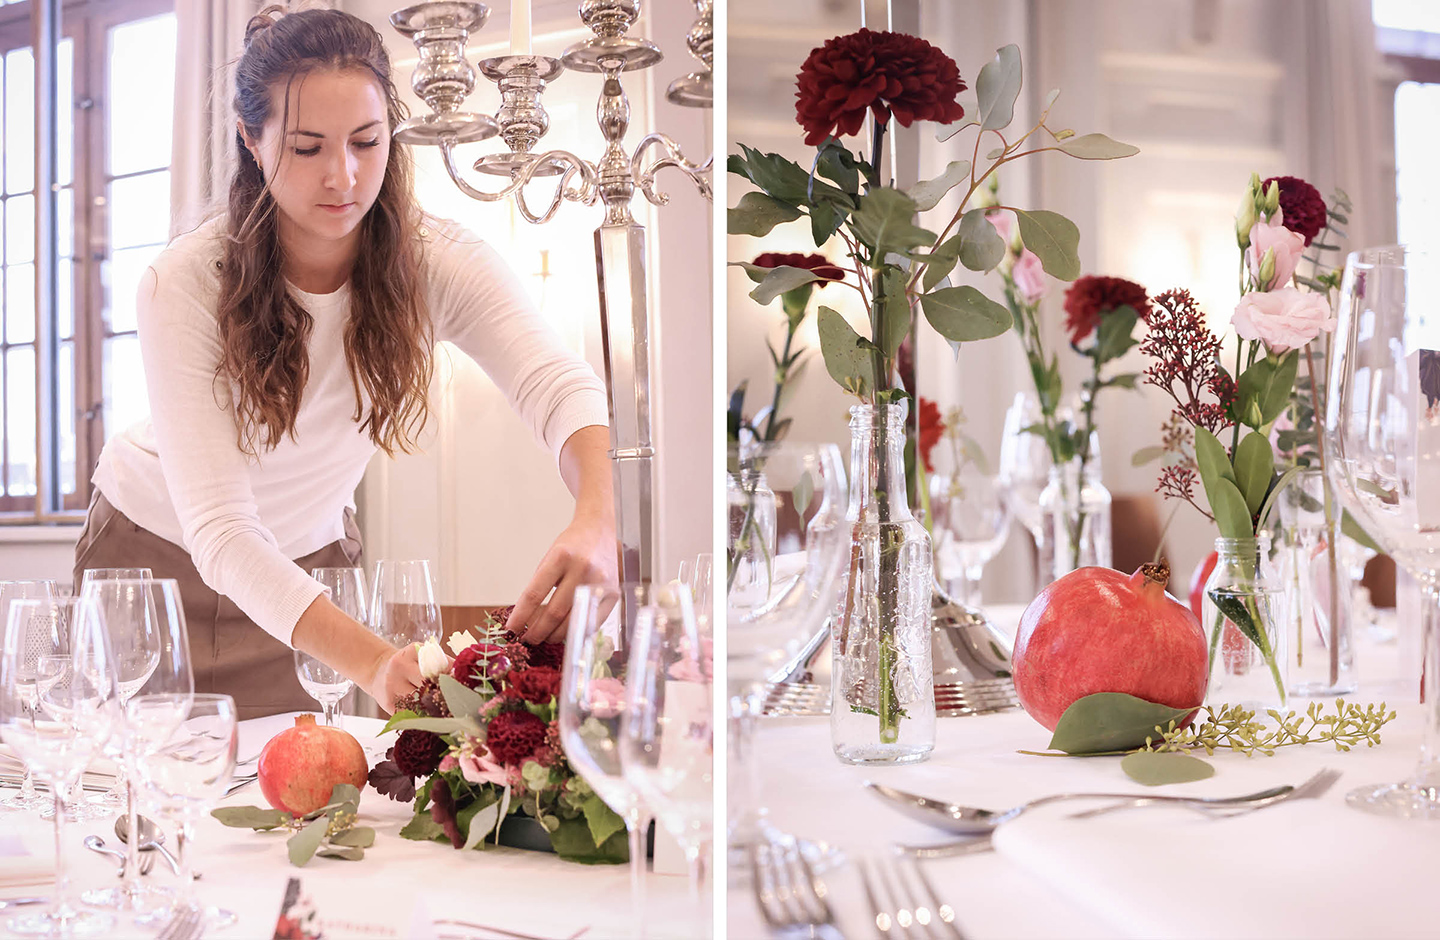 Die Dekorateurin deckt den Hochzeitstisch ein und arrangiert ein Blumengesteck in der Mitte des Tisches.